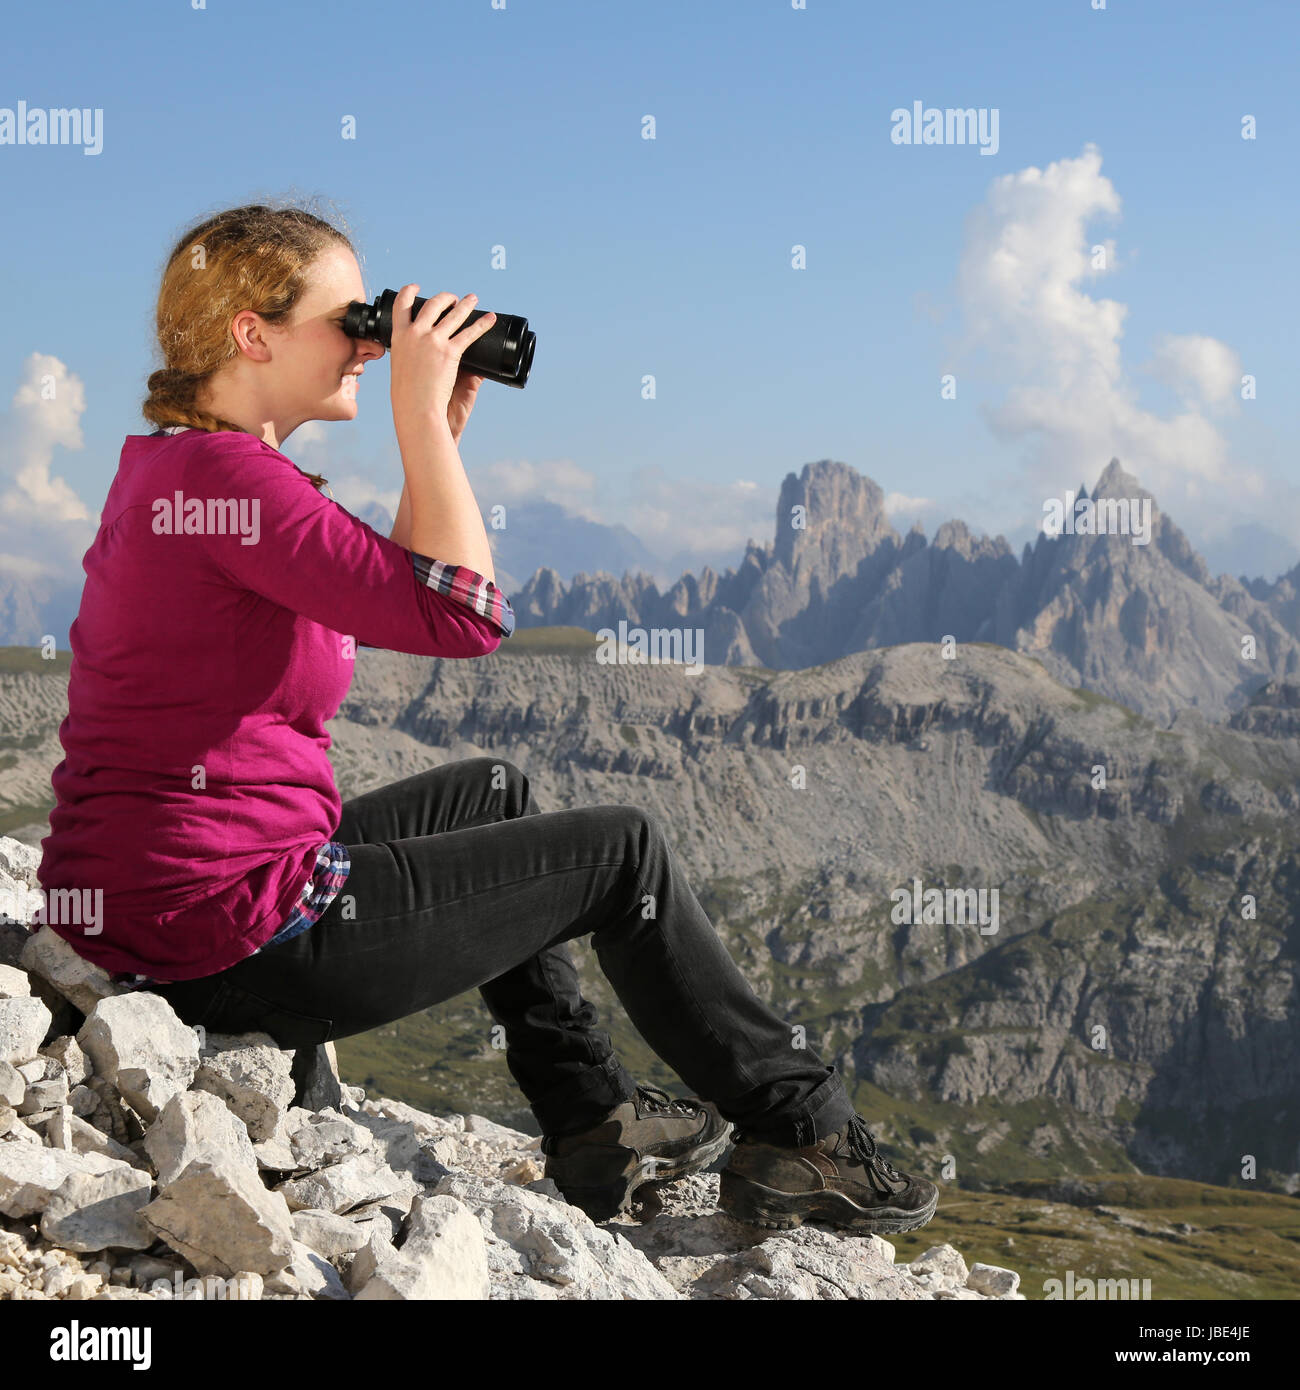 Eine junge Frau betrachtet die Landschaft in den Bergen durch ein Fernglas Stock Photo